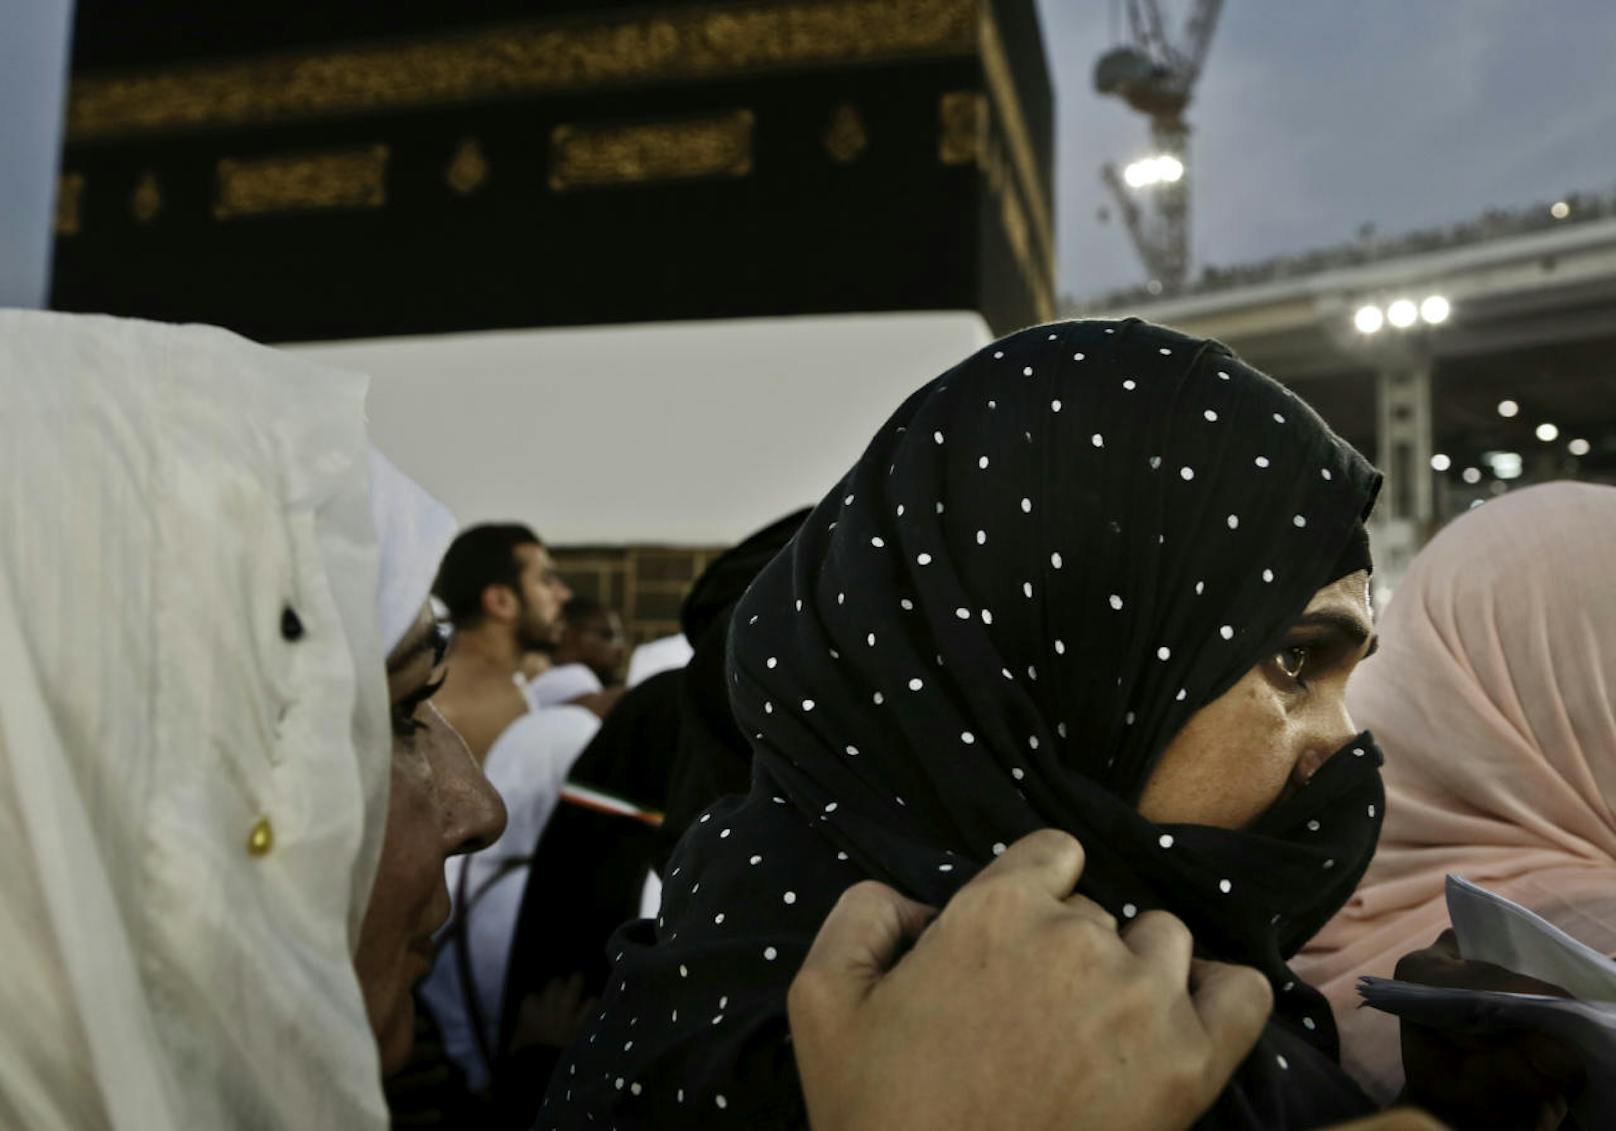 Das Umrunden der Kaaba ("Tawaf") vollziehen Männer und Frauen gemeinsam. Gerade bei dieser Gelegenheit soll es vermehrt zu sexuellen Übergriffen auf Frauen kommen.